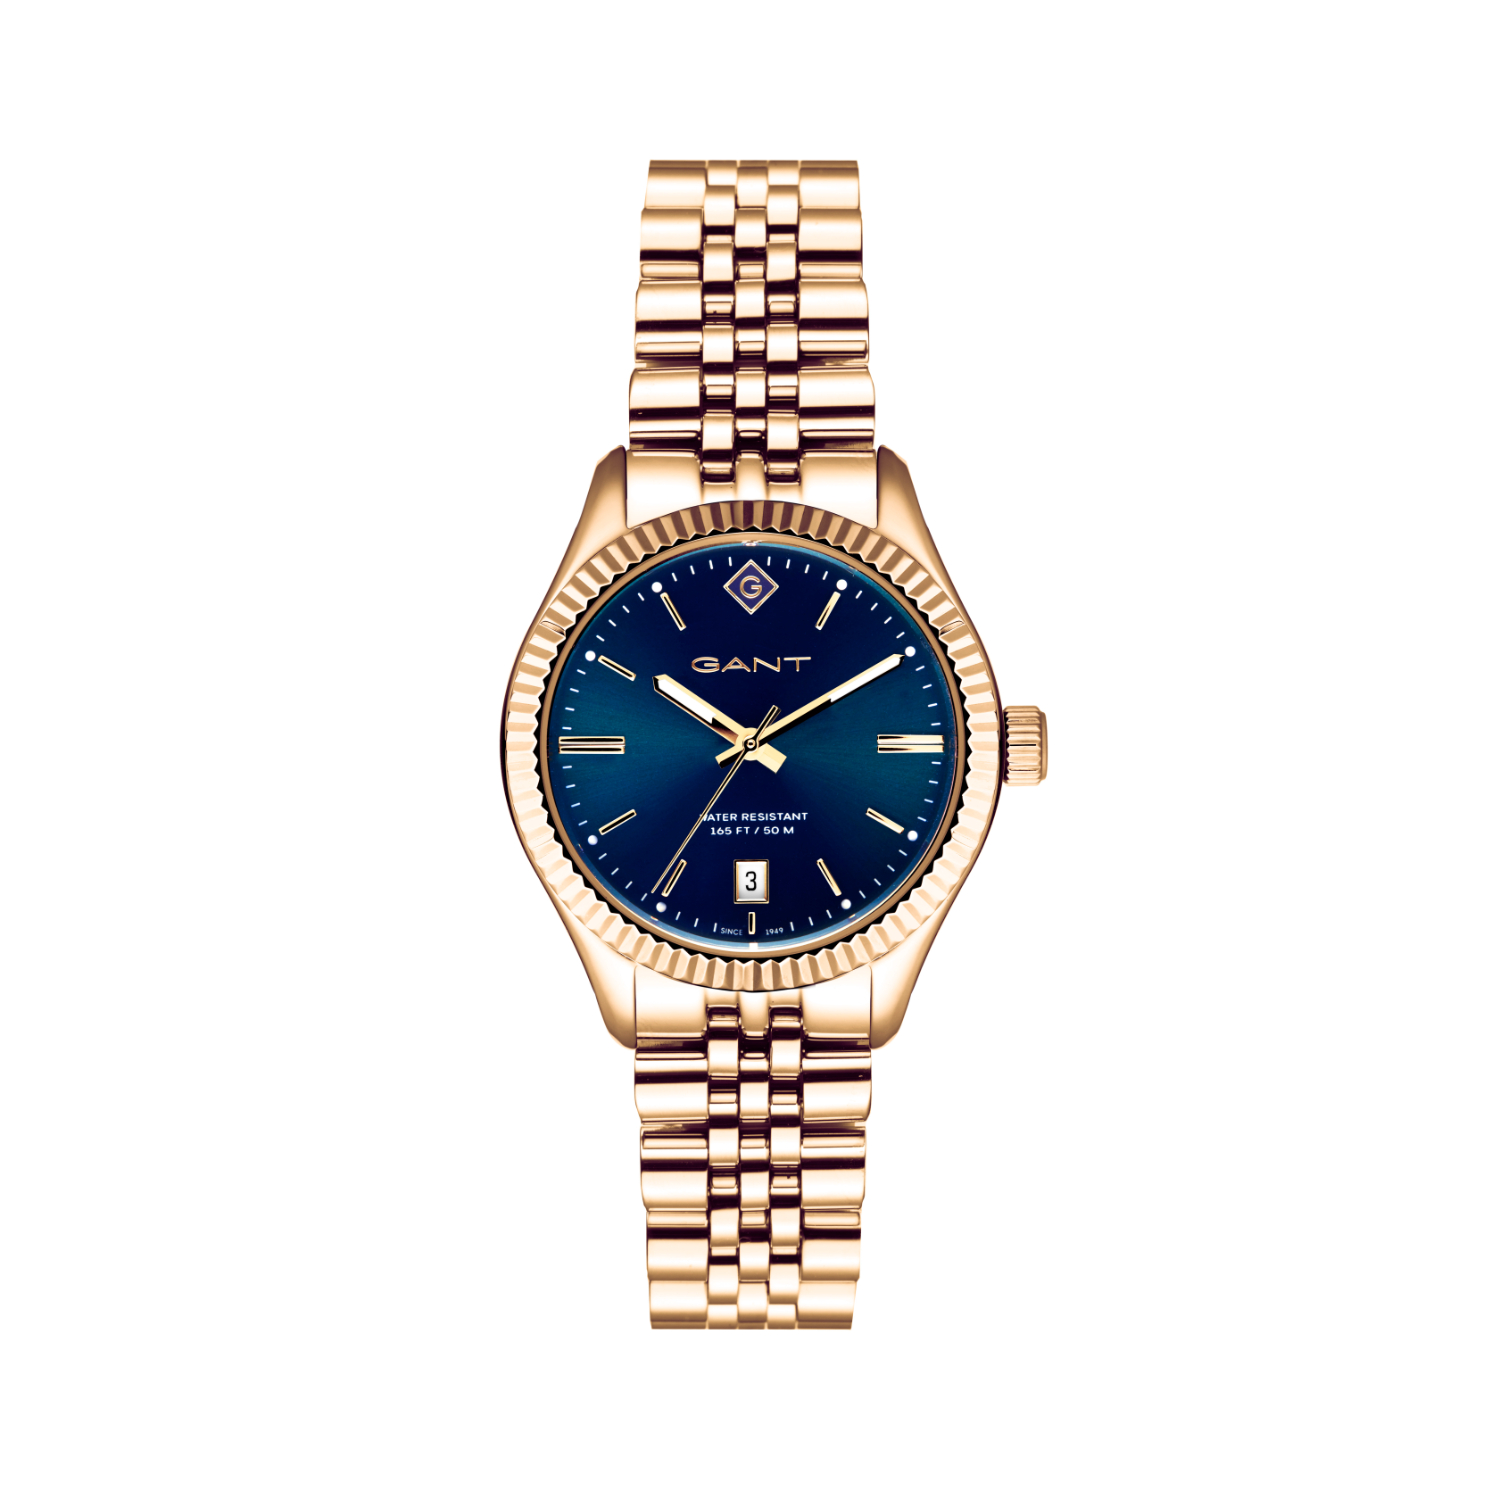 Γυναικείο ρολόι Gant από χρυσό ανοξείδωτο ατσάλι με μπλε καντράν και μπρασελέ.